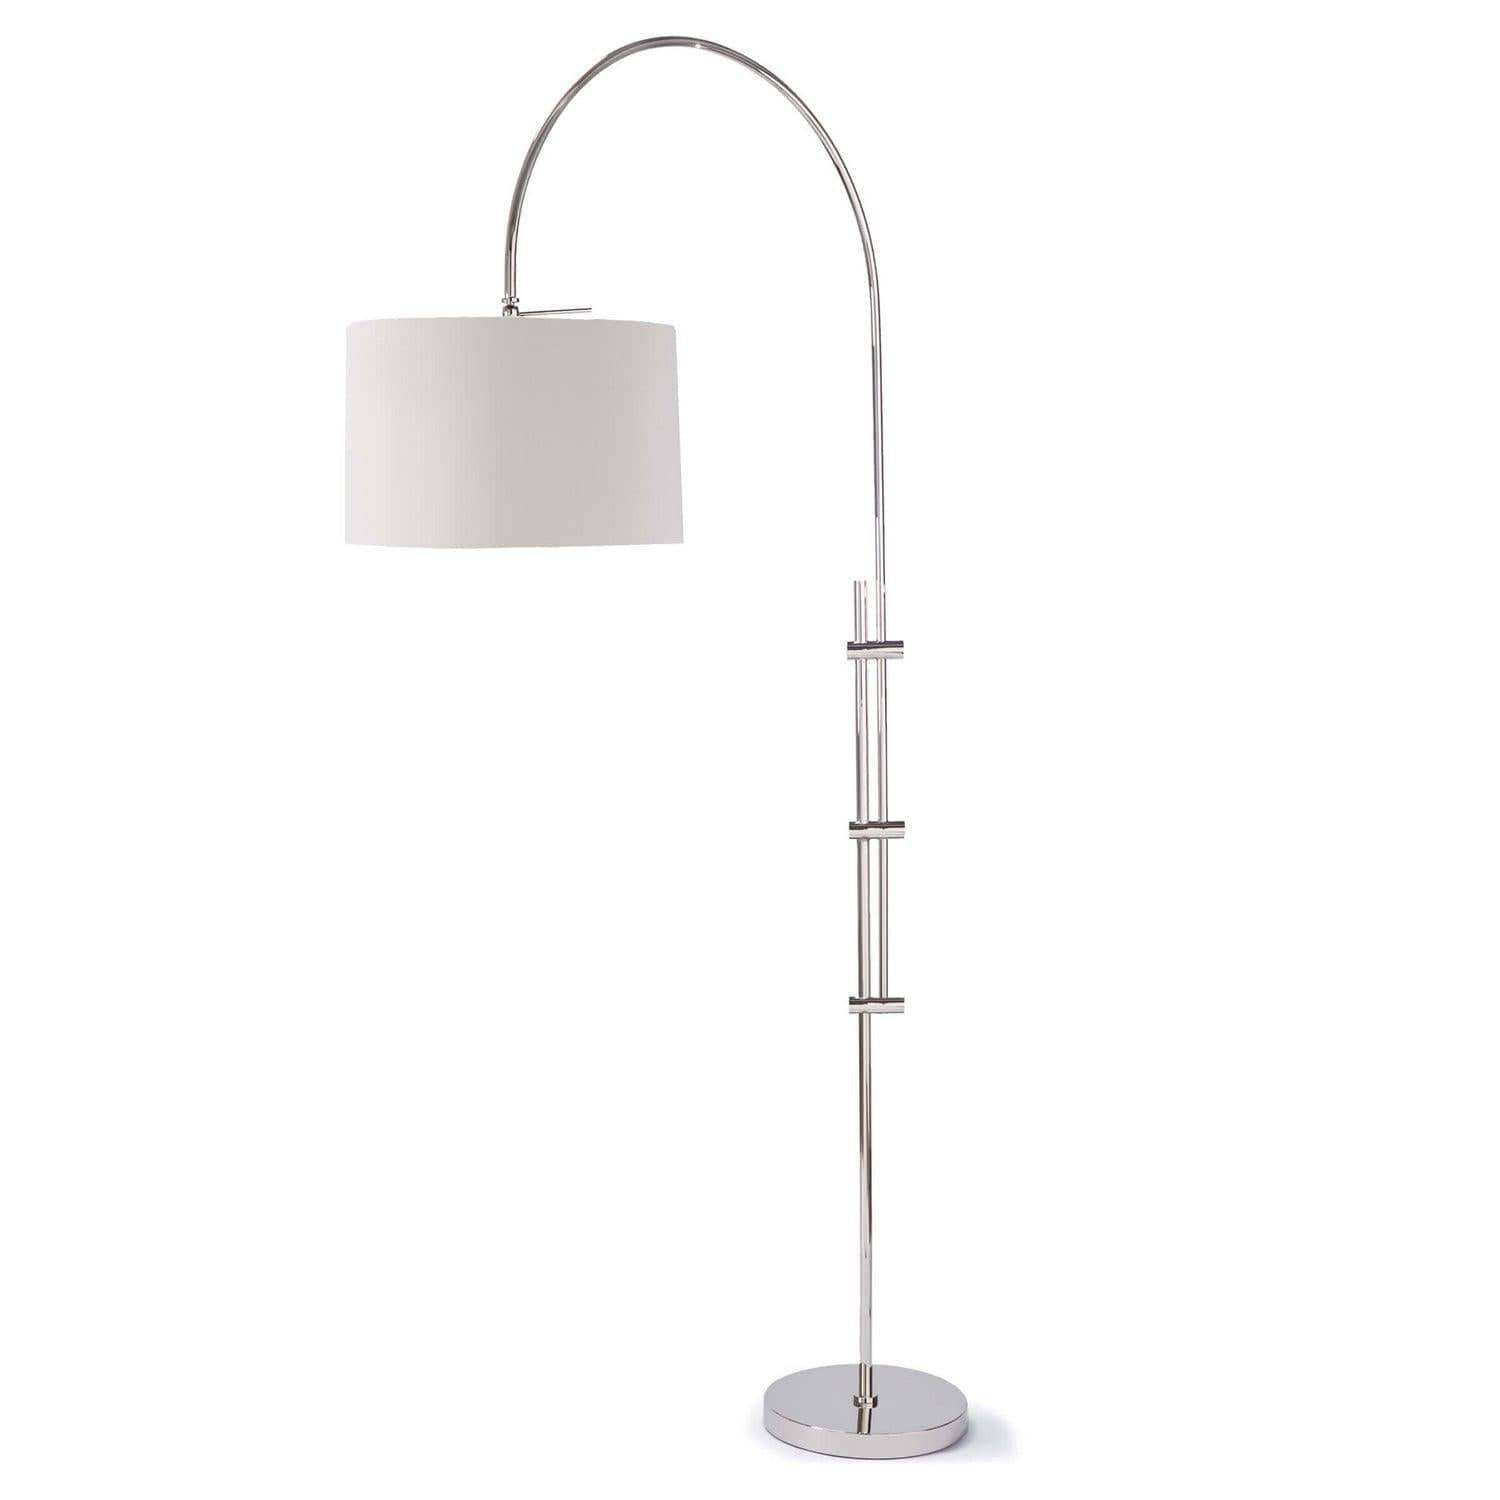 Regina Andrew - Arc Floor Lamp - 14-1004PN | Montreal Lighting & Hardware